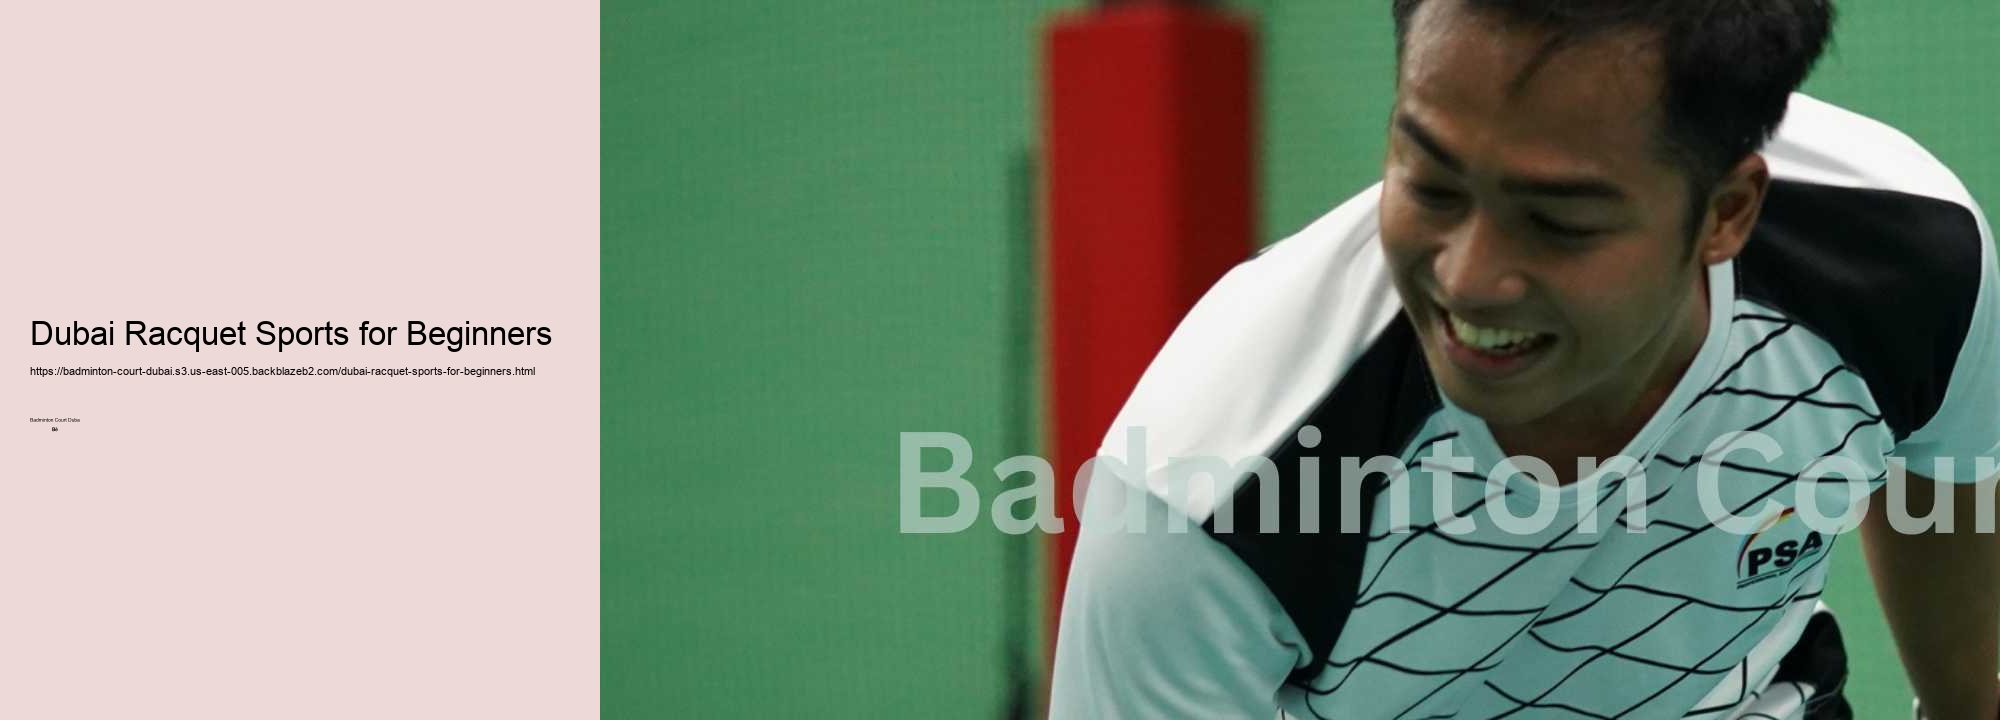 Dubai Racquet Sports for Beginners